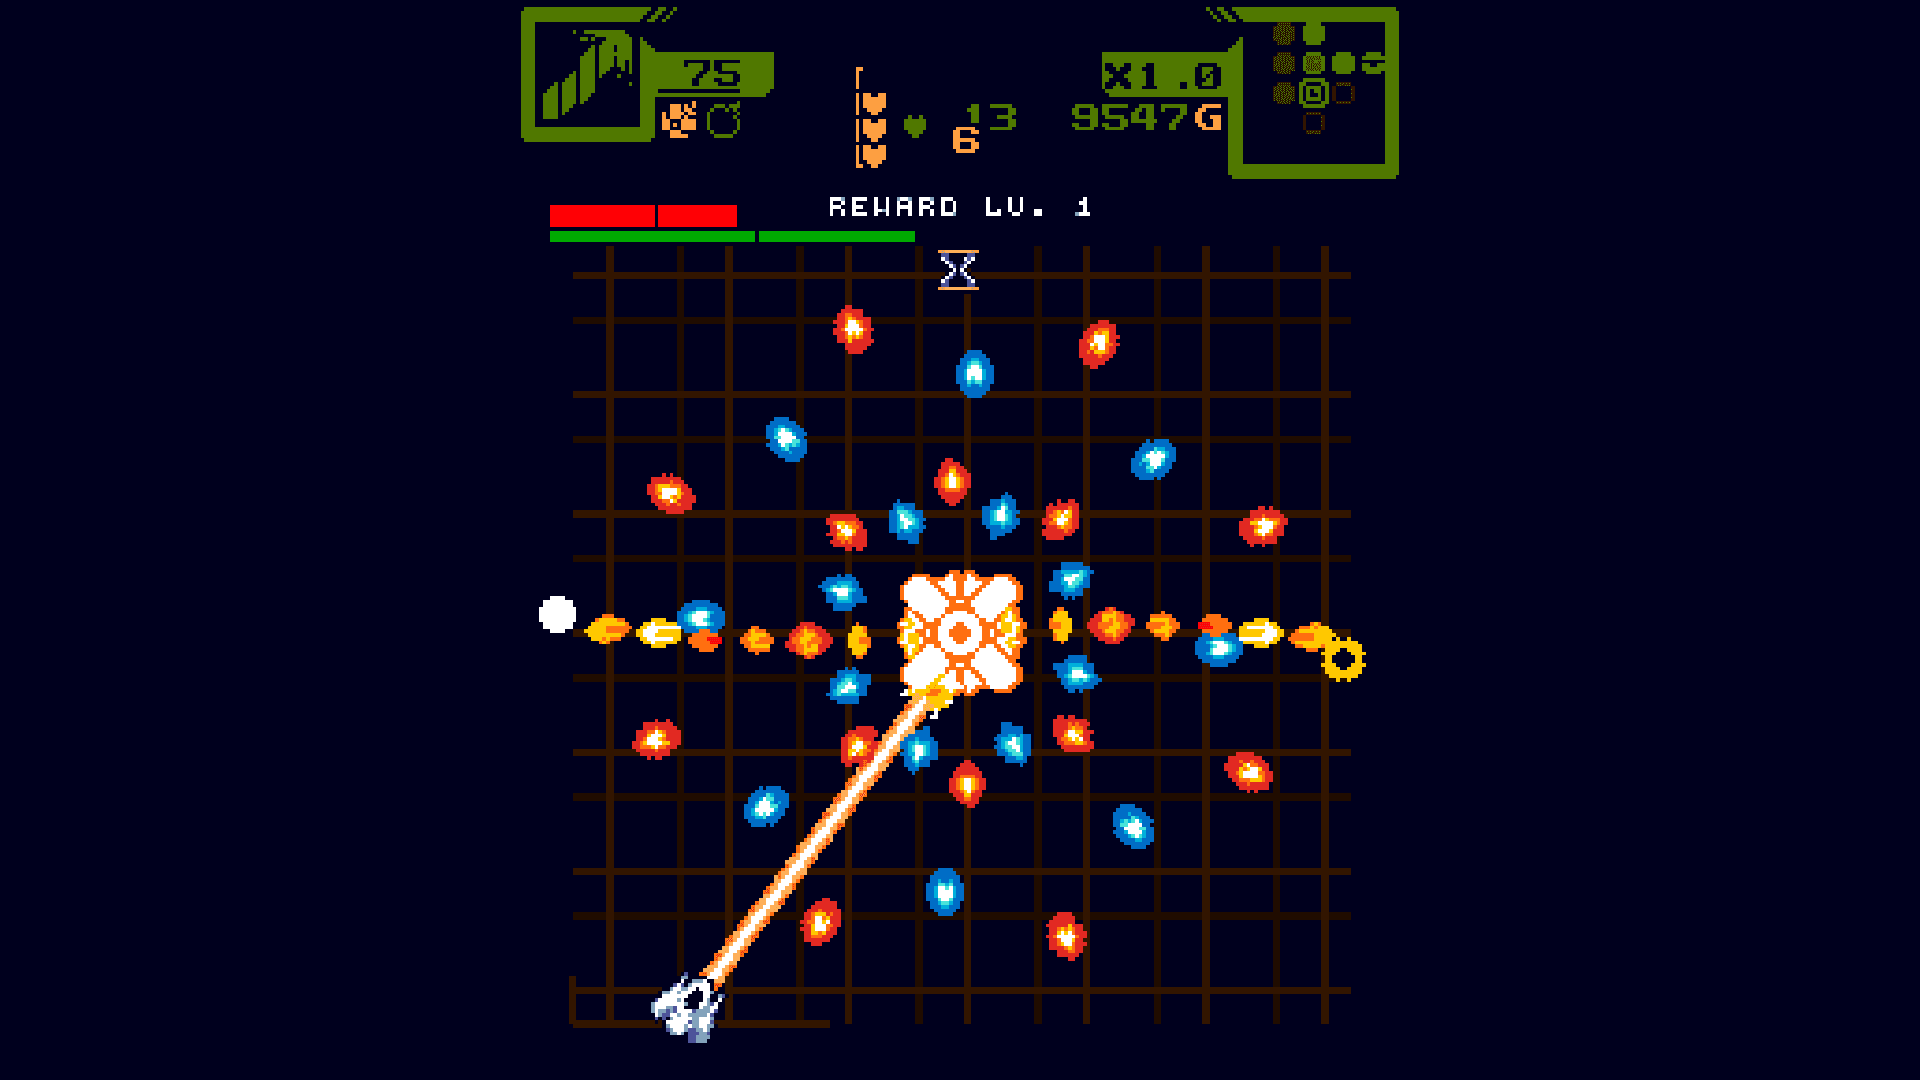 Star of Providence screenshot depicting a miniboss battle